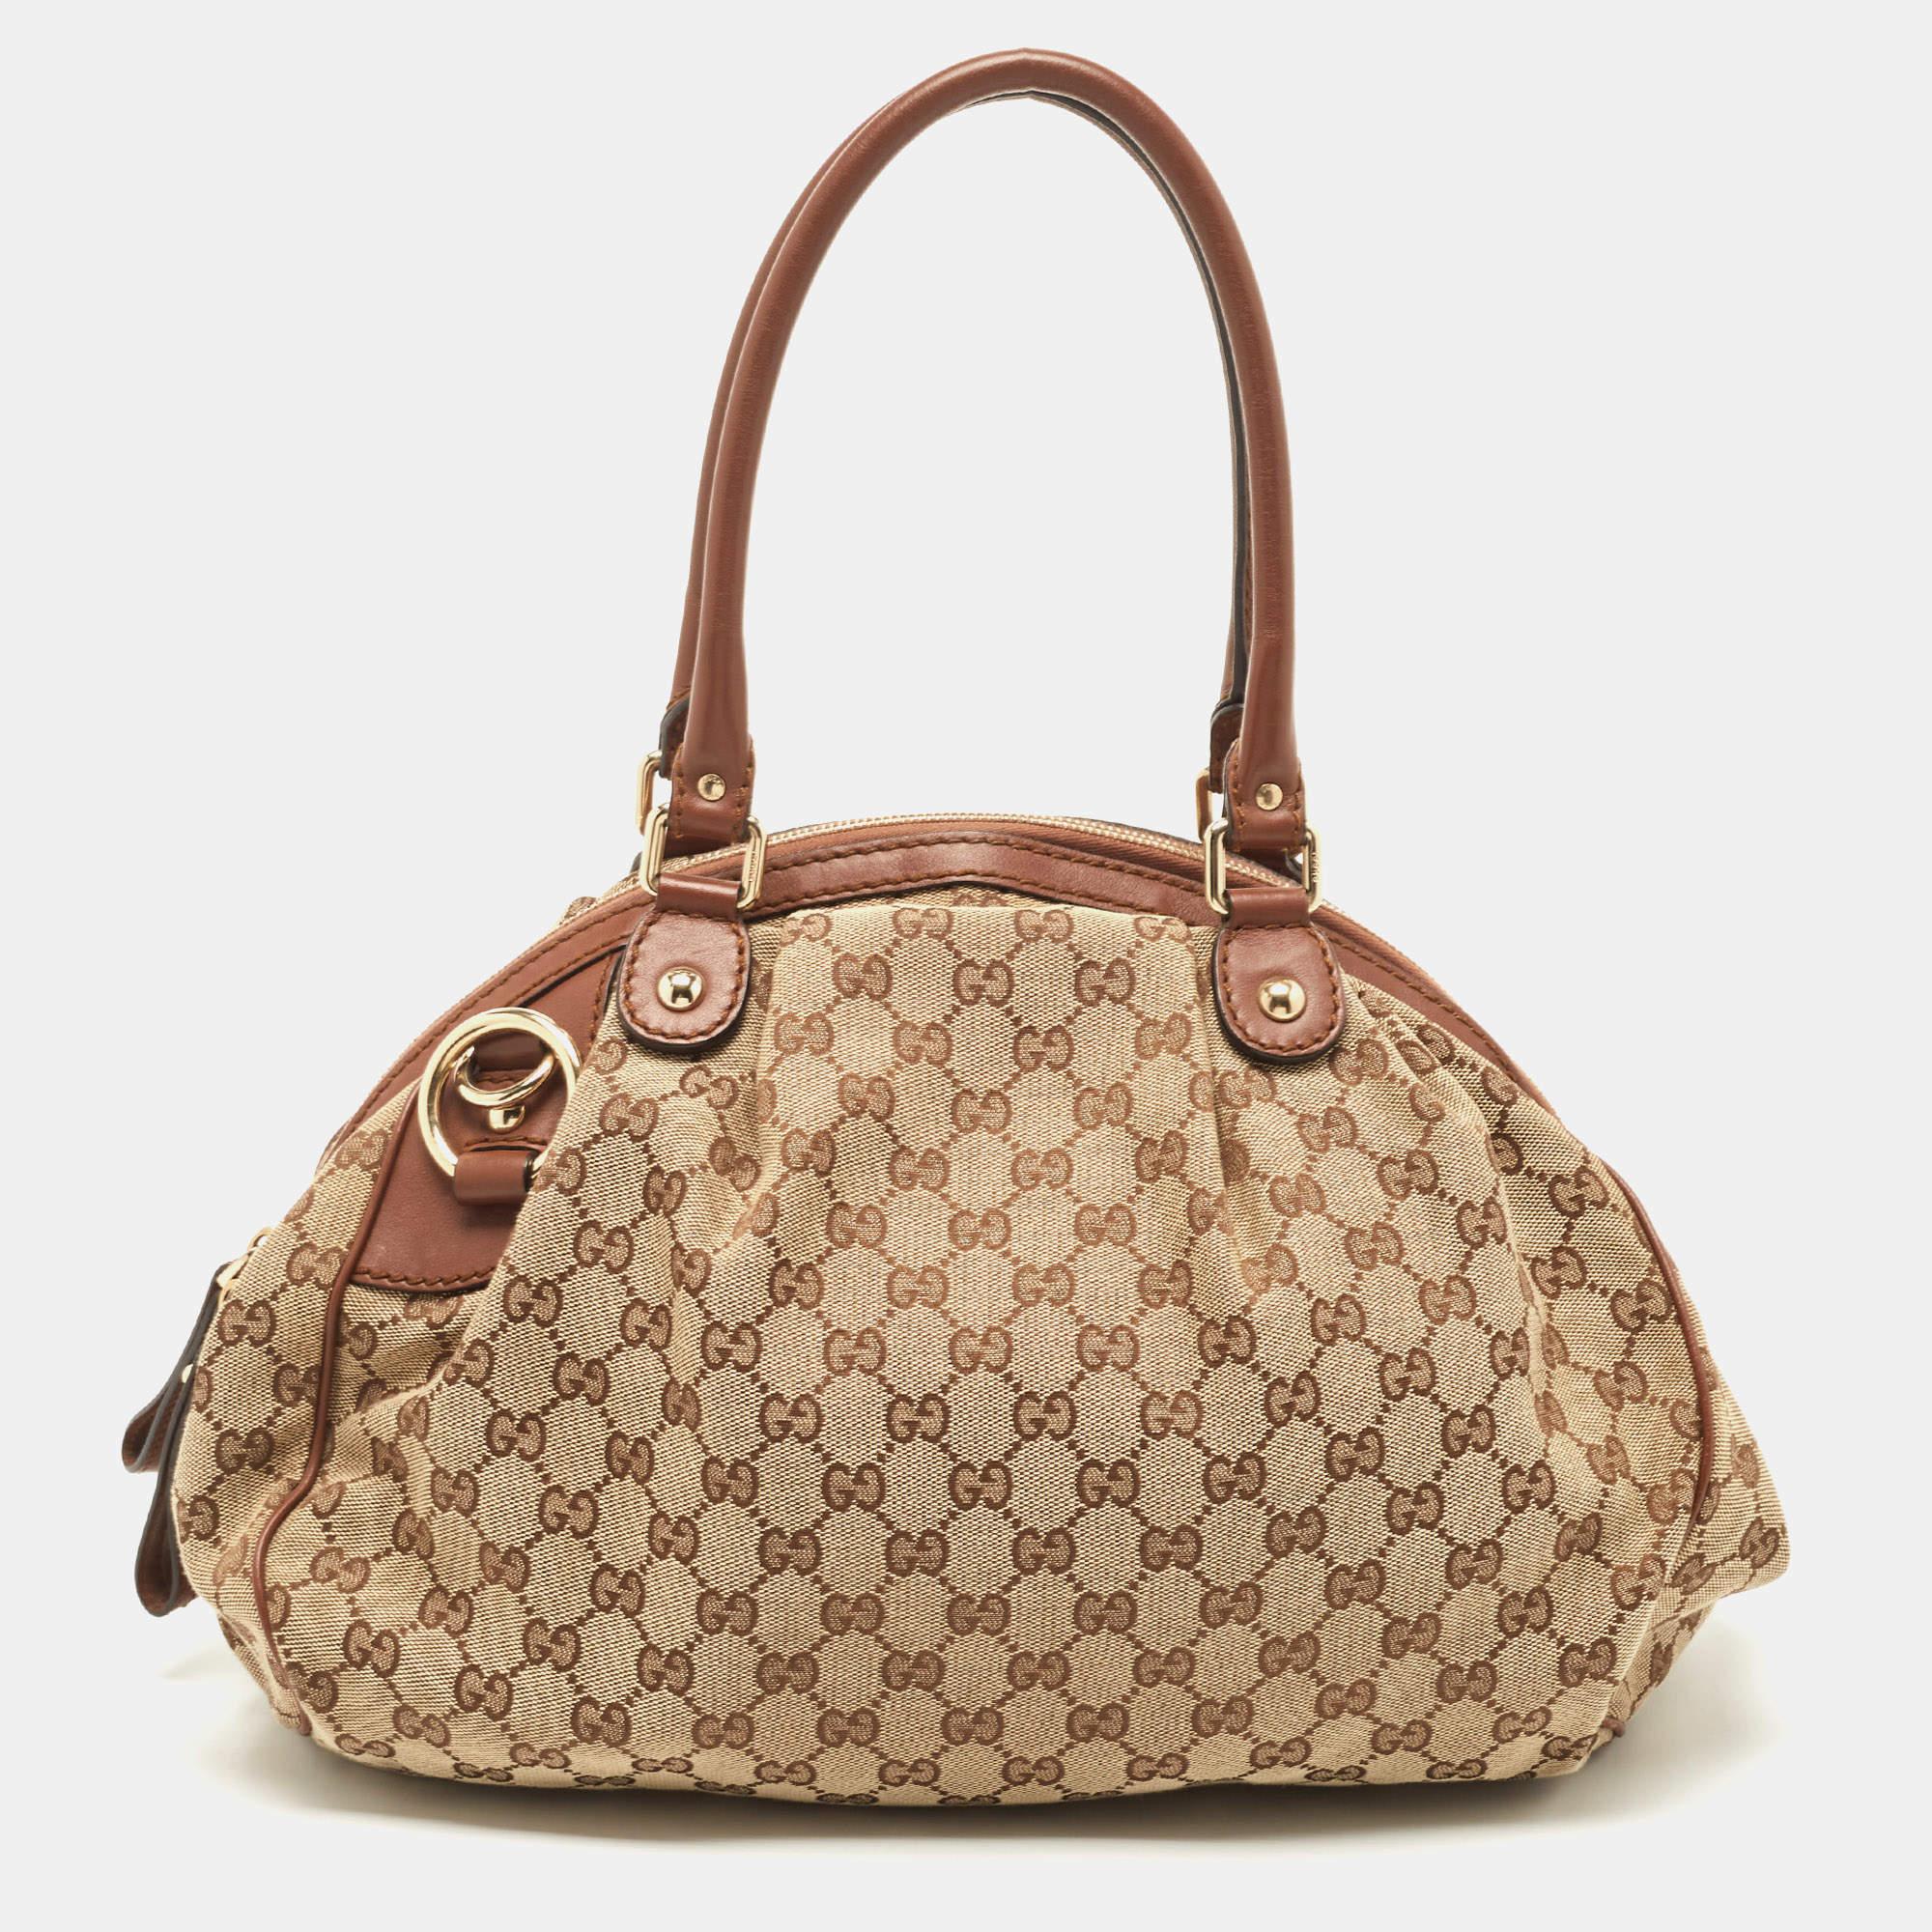 Le sac Sukey Boston de la maison Gucci est un classique. Réalisé en toile GG, ce sac est agrémenté de finitions en cuir. Il est doté d'un intérieur spacieux en tissu et de deux poignées.

